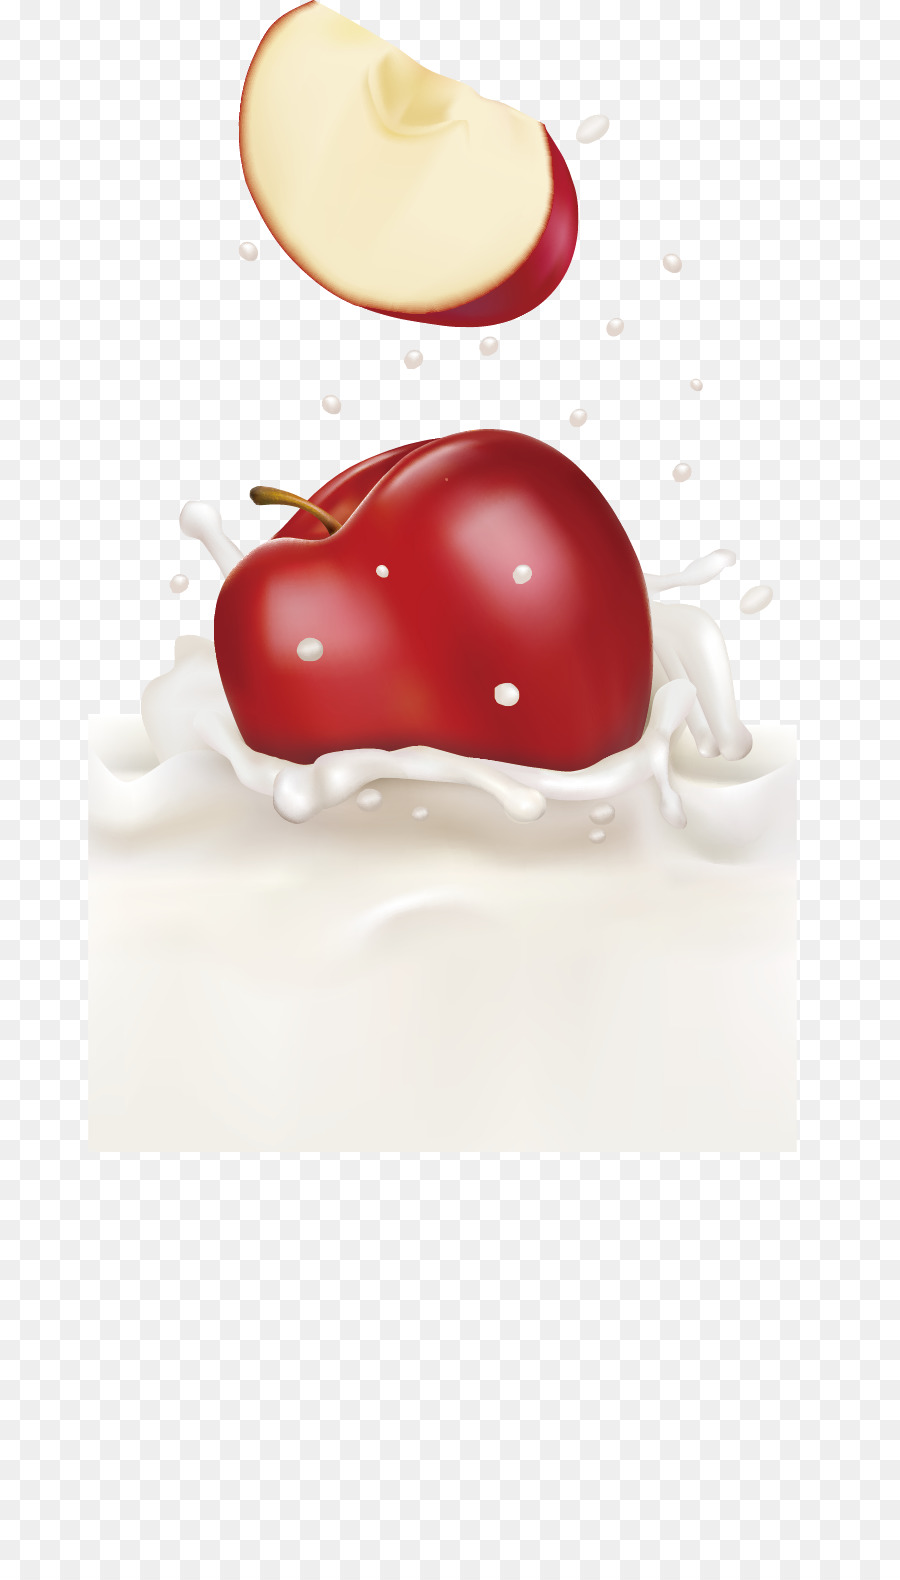 Apfel-Pfirsich-Frucht Kühe Milch - Milch Red Apple